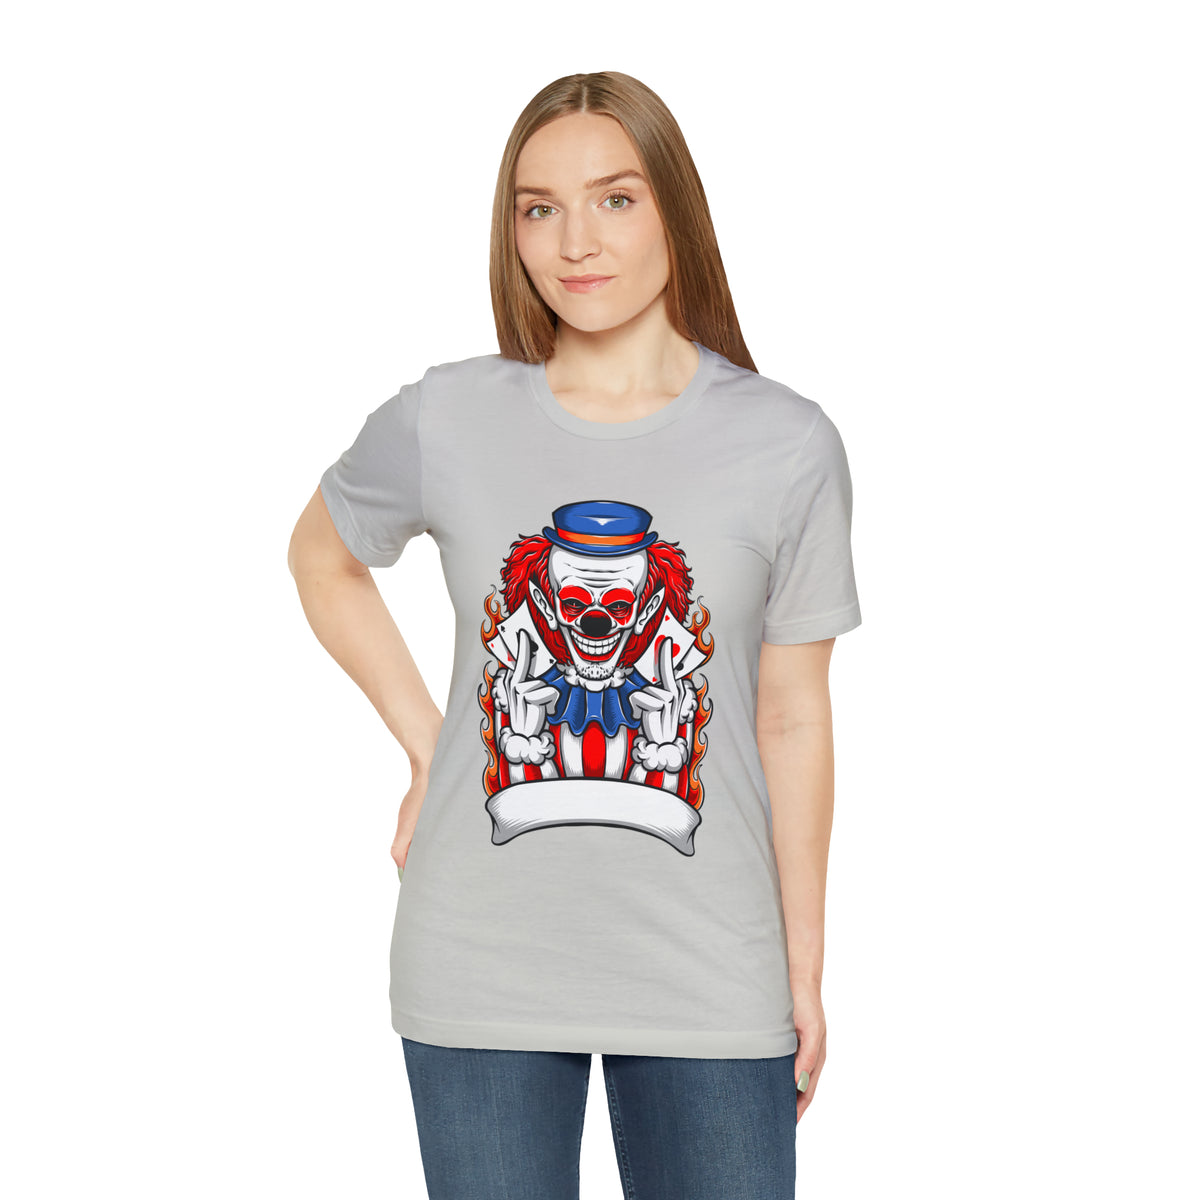 Clown T Shirt Design Unisex Jersey